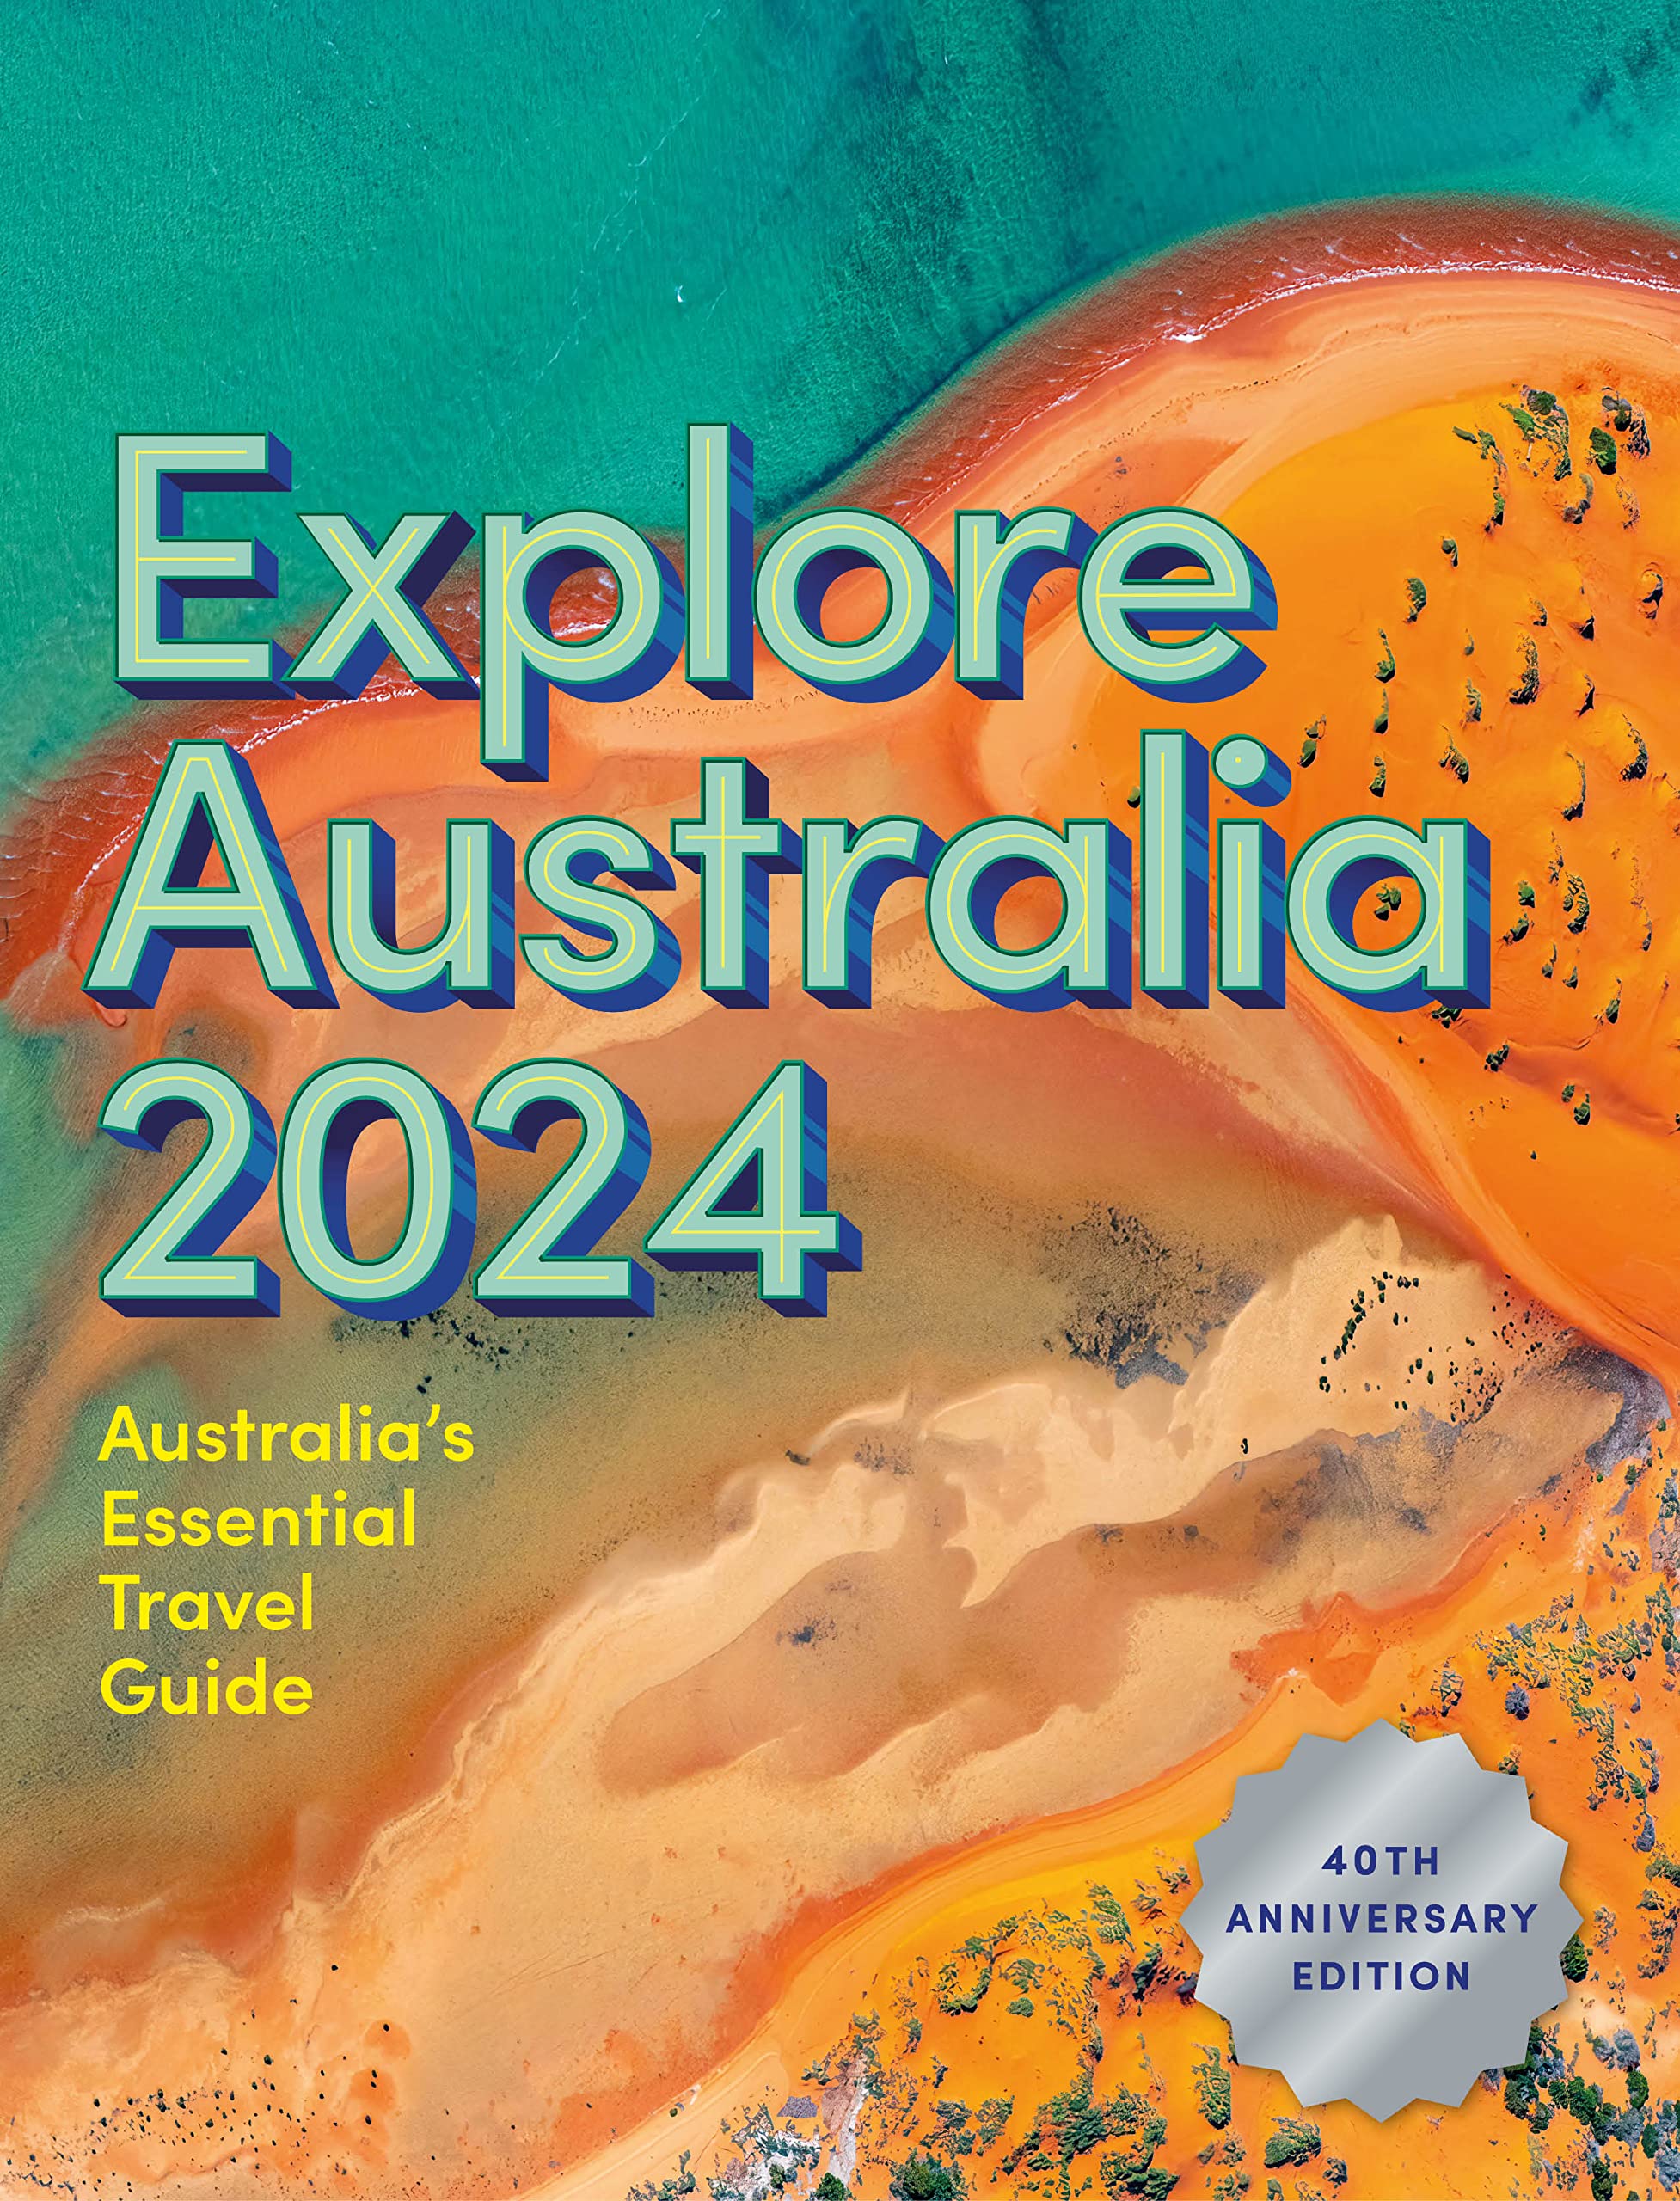 Buy Explore Australia 2024 Australia's Essential Travel Guide The